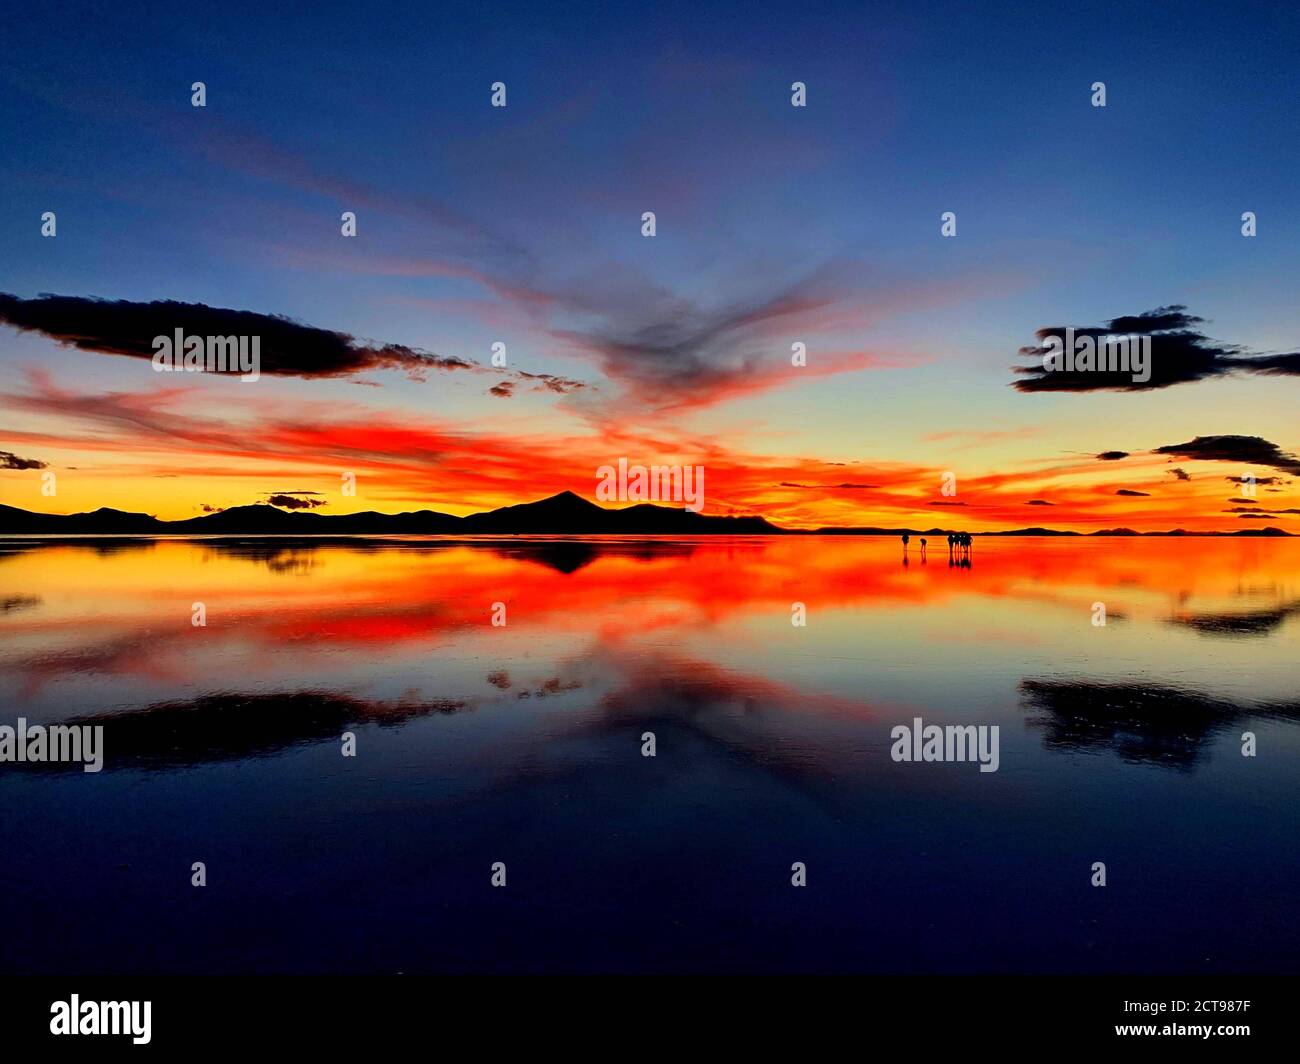 Coucher de soleil spectaculaire sur le lac salé, Salar de Uyuni, Bolivie. Paysage magnifique du désert Atacama. Coucher de soleil surréaliste rouge flamboyant sur les appartements salins d'Uyuni. Banque D'Images